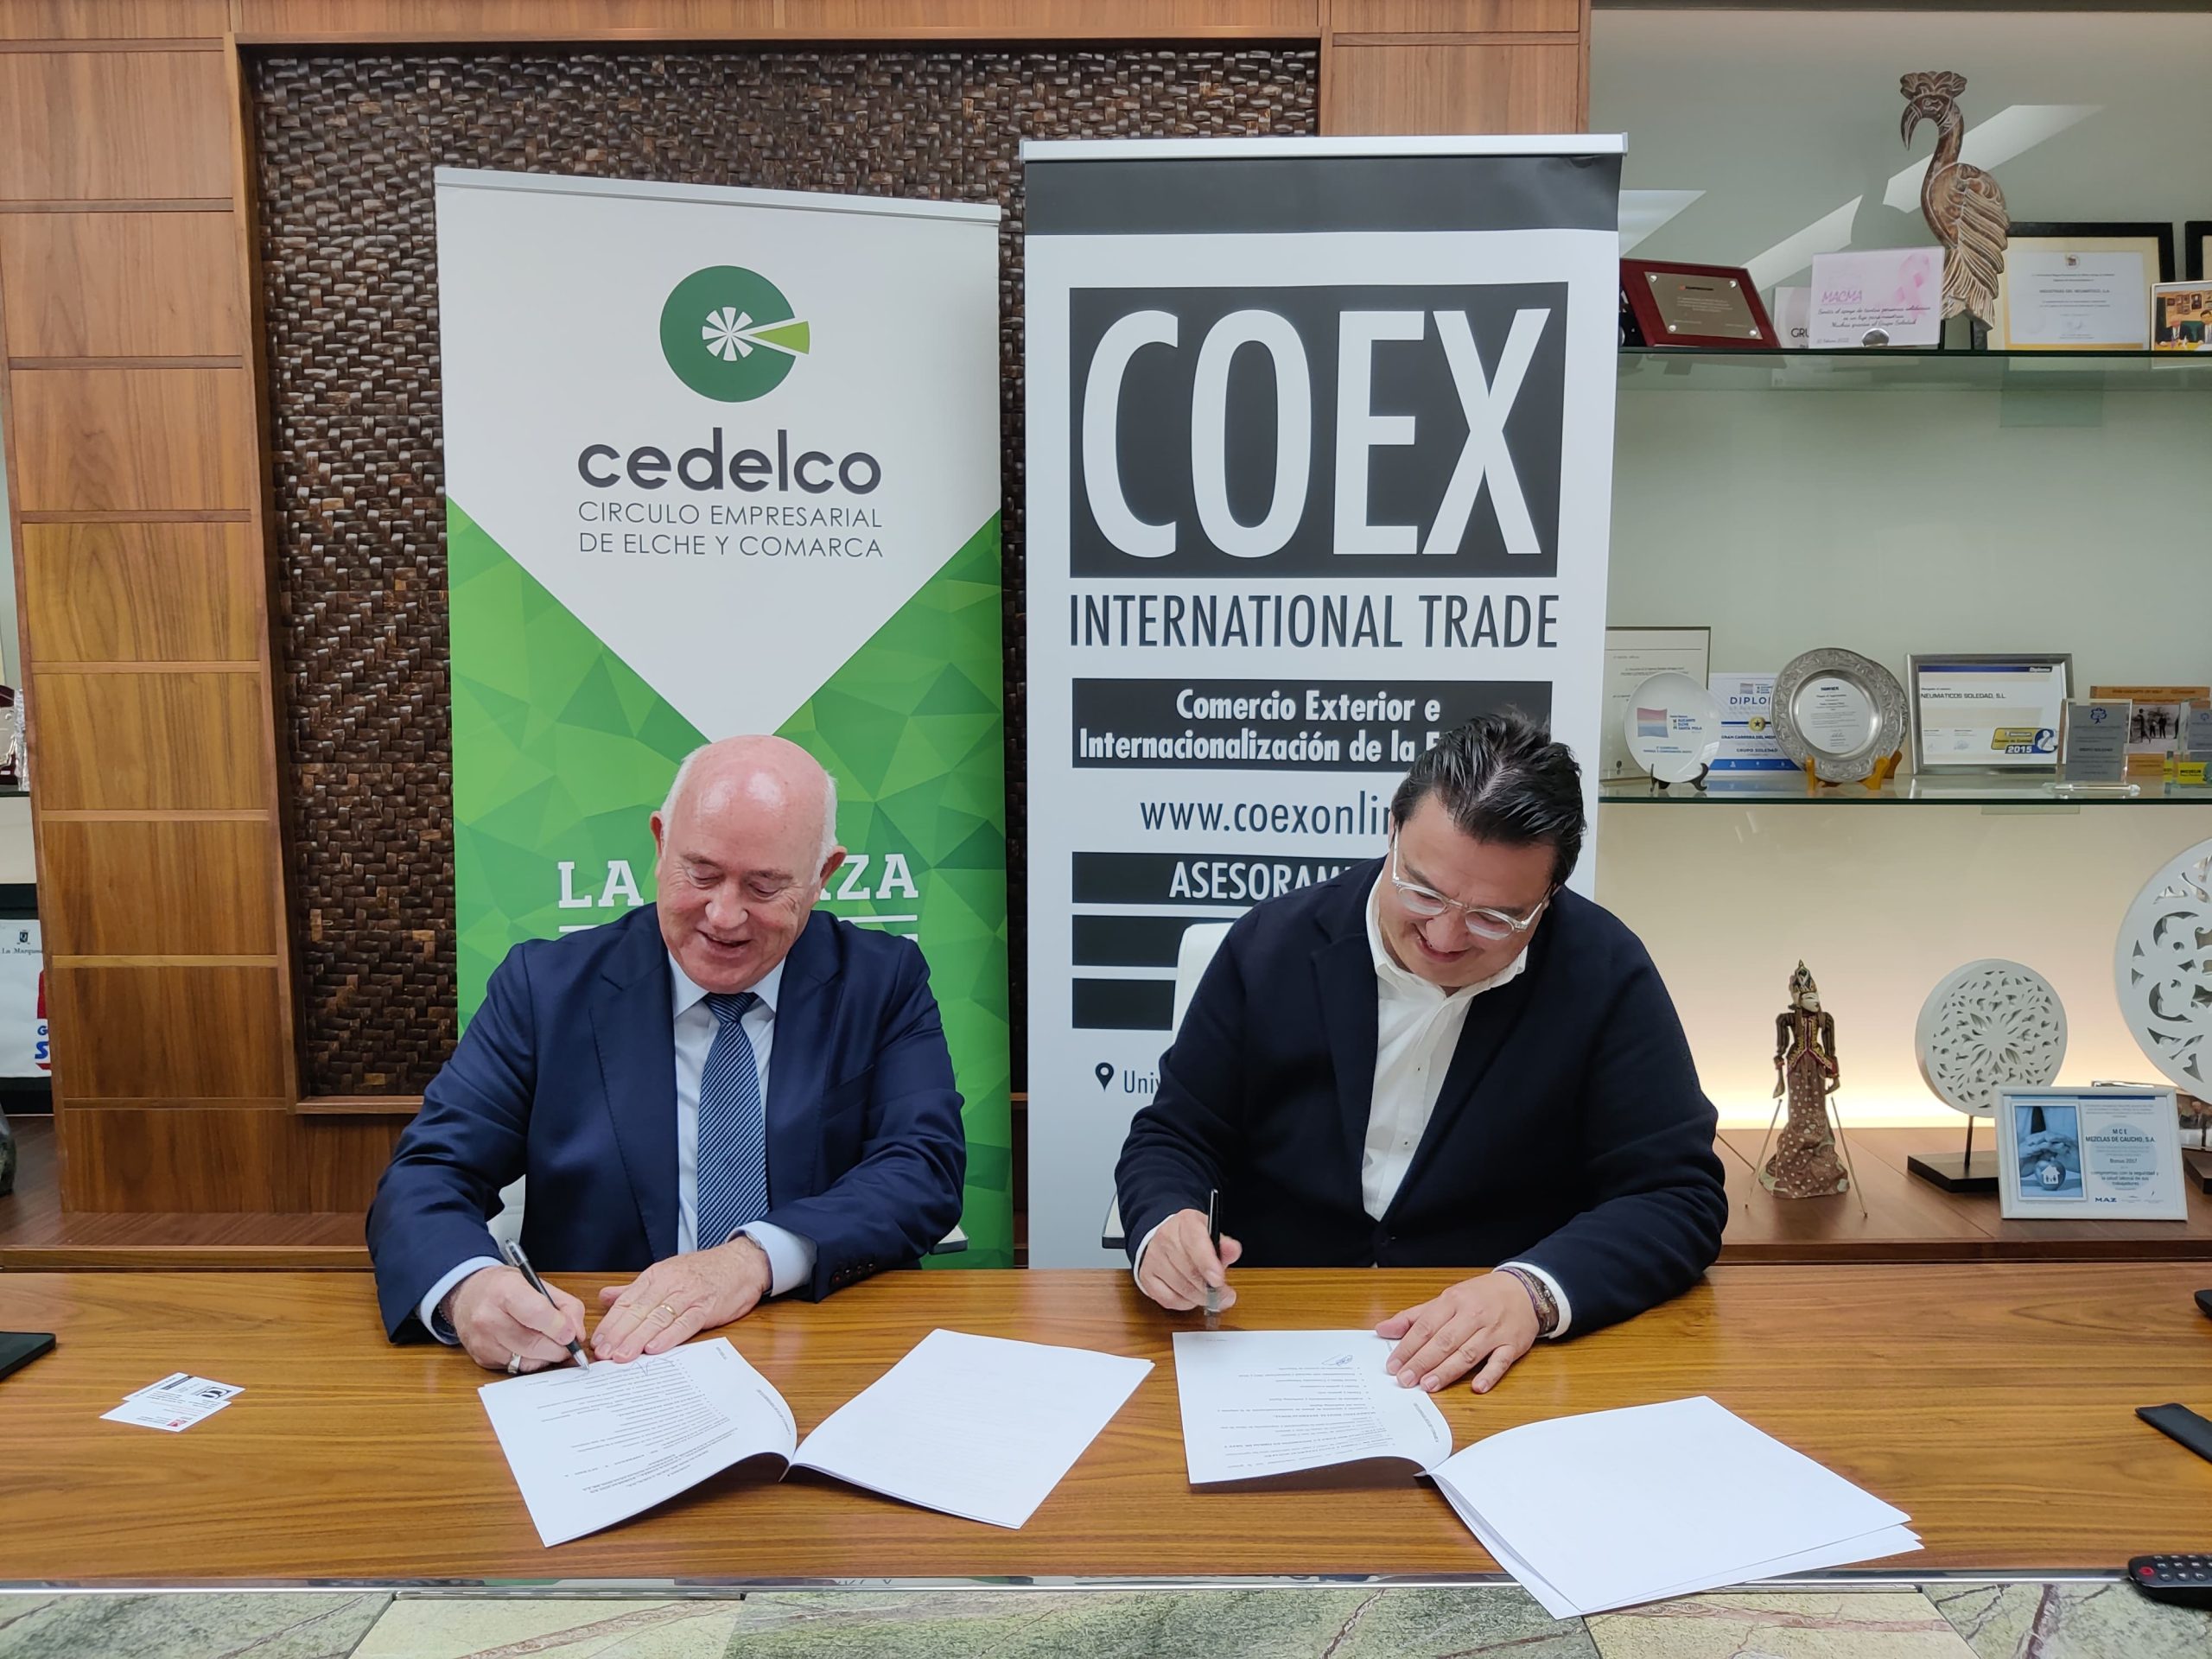 Colaboración entre COEX y Cedelco